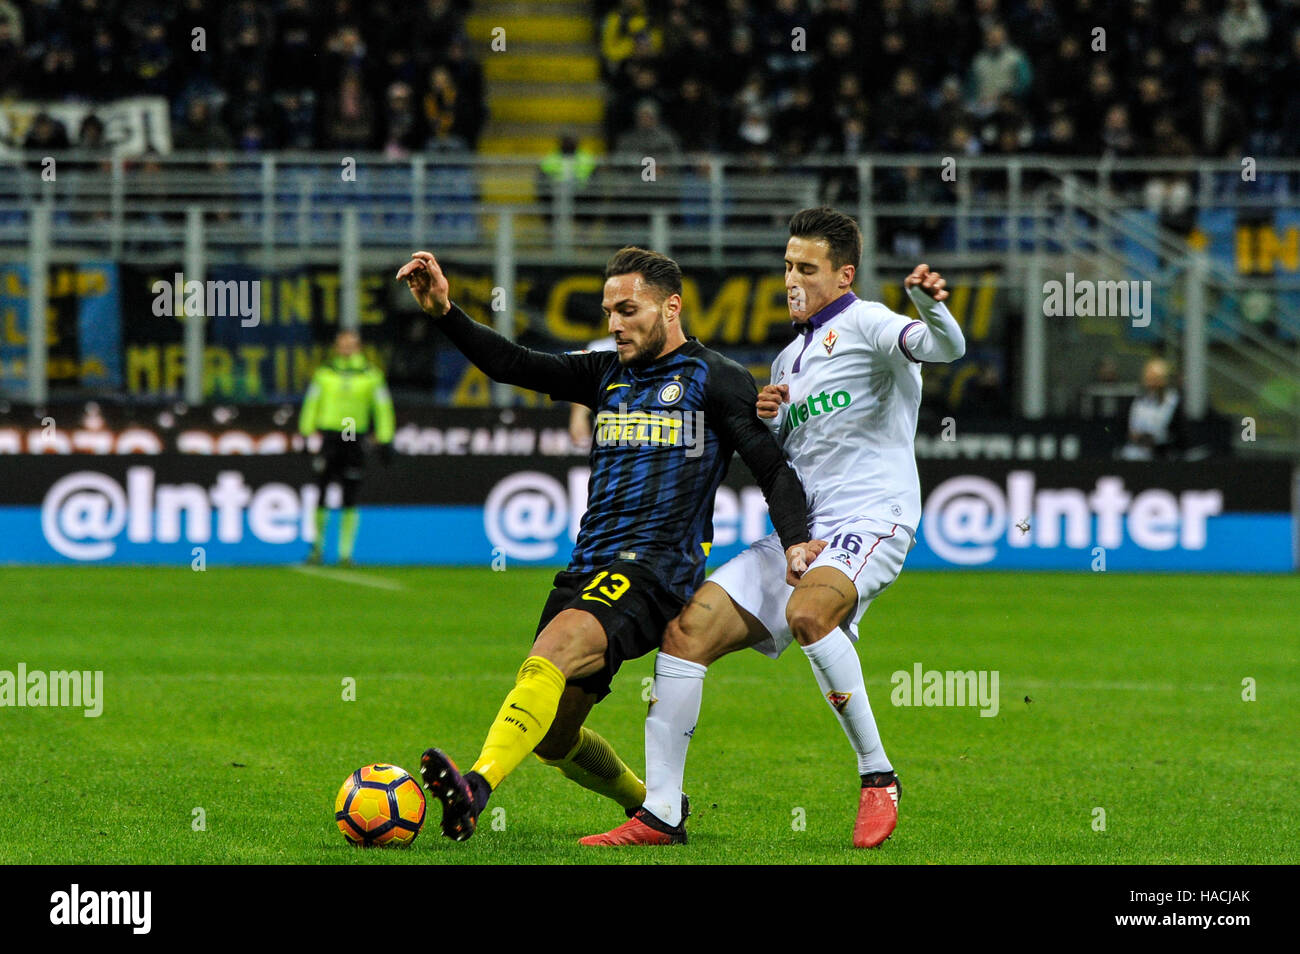 Milan, Italy. 28th Nov, 2016. Andrea ranocchia of FC Inter and Cristian  Tello of AC Fiorentina